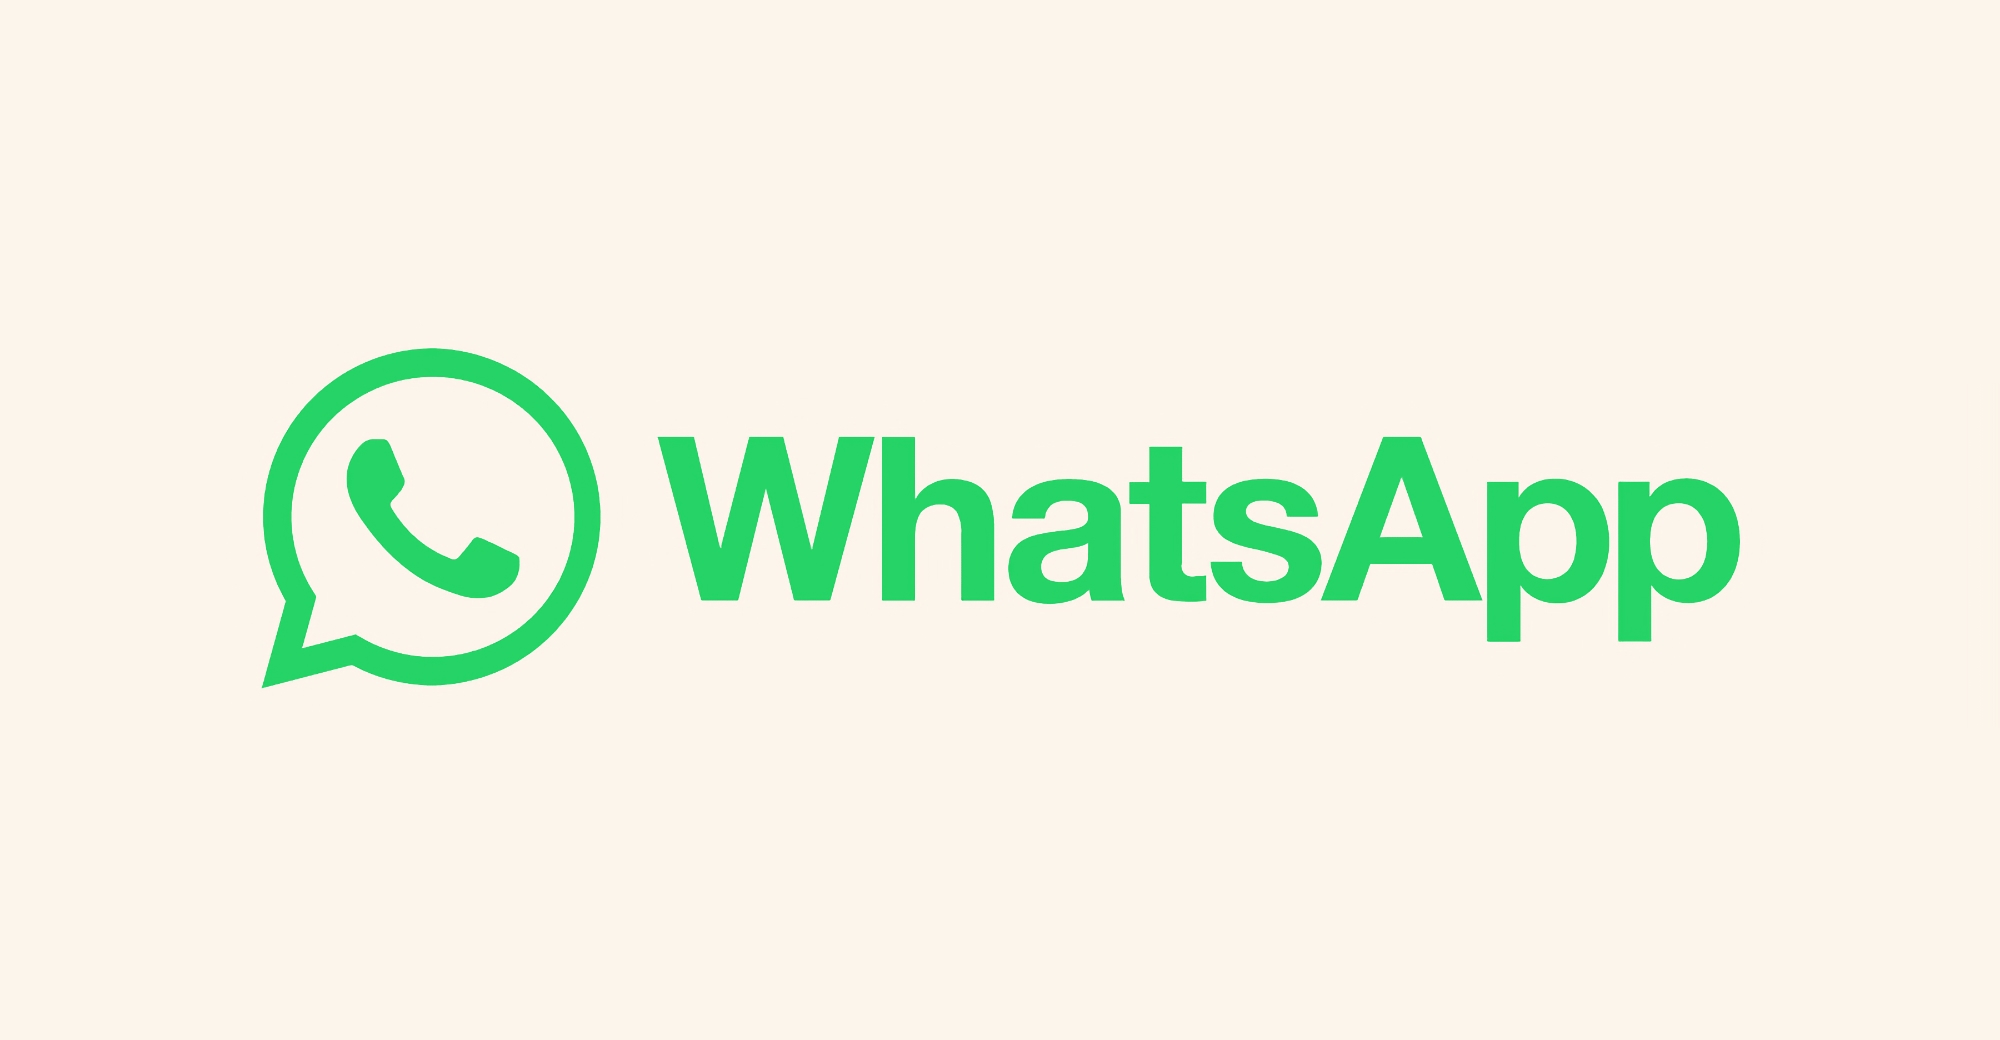 WhatsApp od 1 stycznia nie będzie działał na Galaxy S2, Galaxy S3 Mini, iPhone 5, iPhone 5C i 43 innych modelach